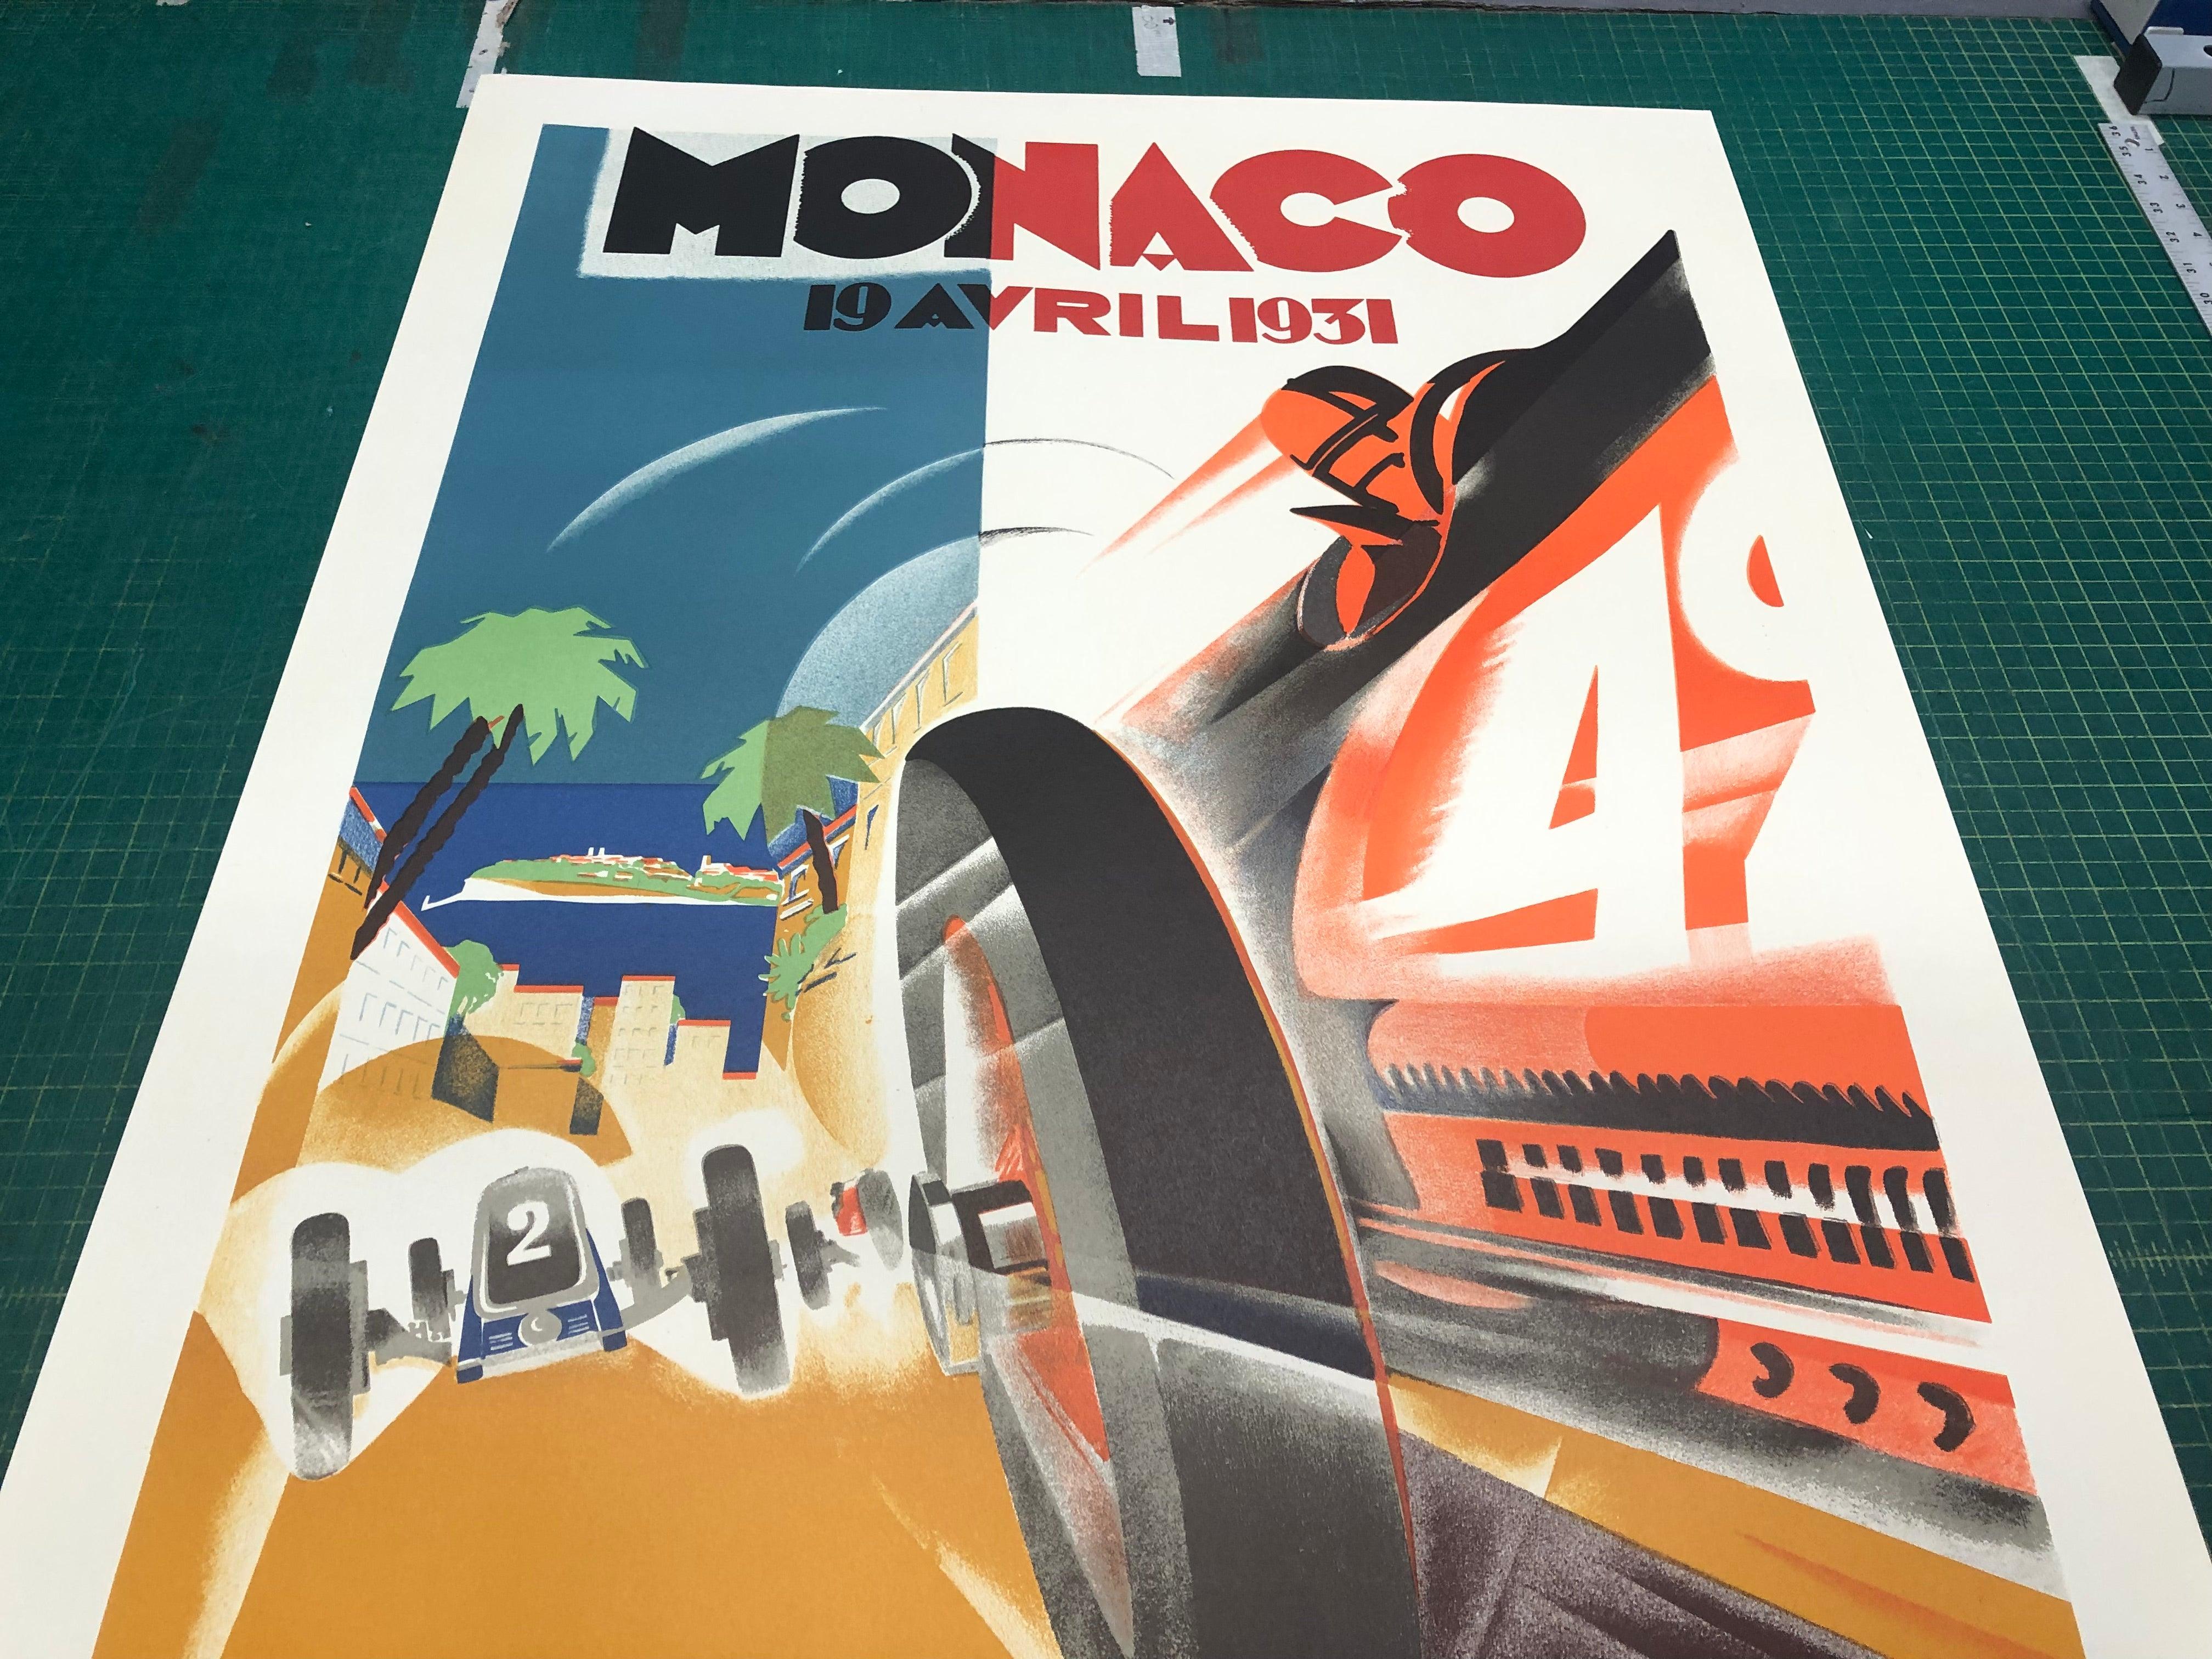 Robert Falcucci 'Monaco Grand Prix 1931' 1983- Lithograph For Sale 3